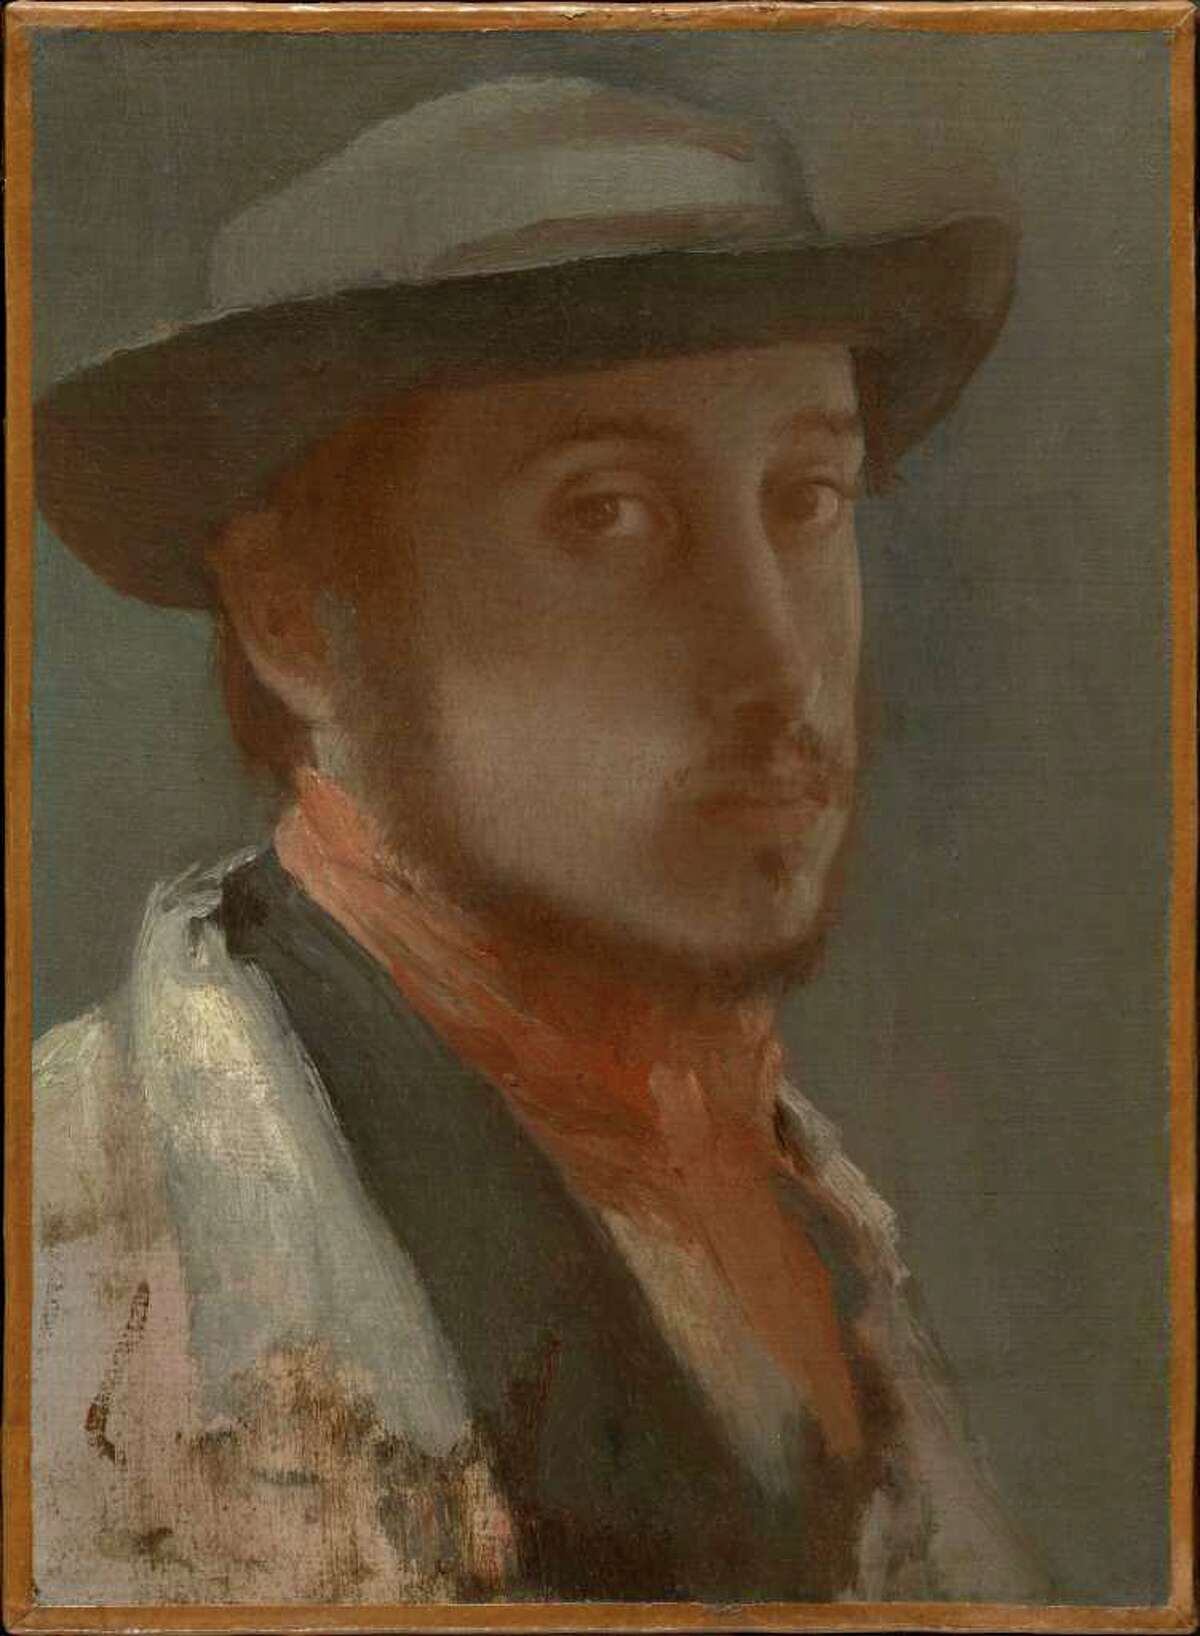 STERLING AND FRANCINE CLARK ART INSTITE Self-portrait of Egar Degas.